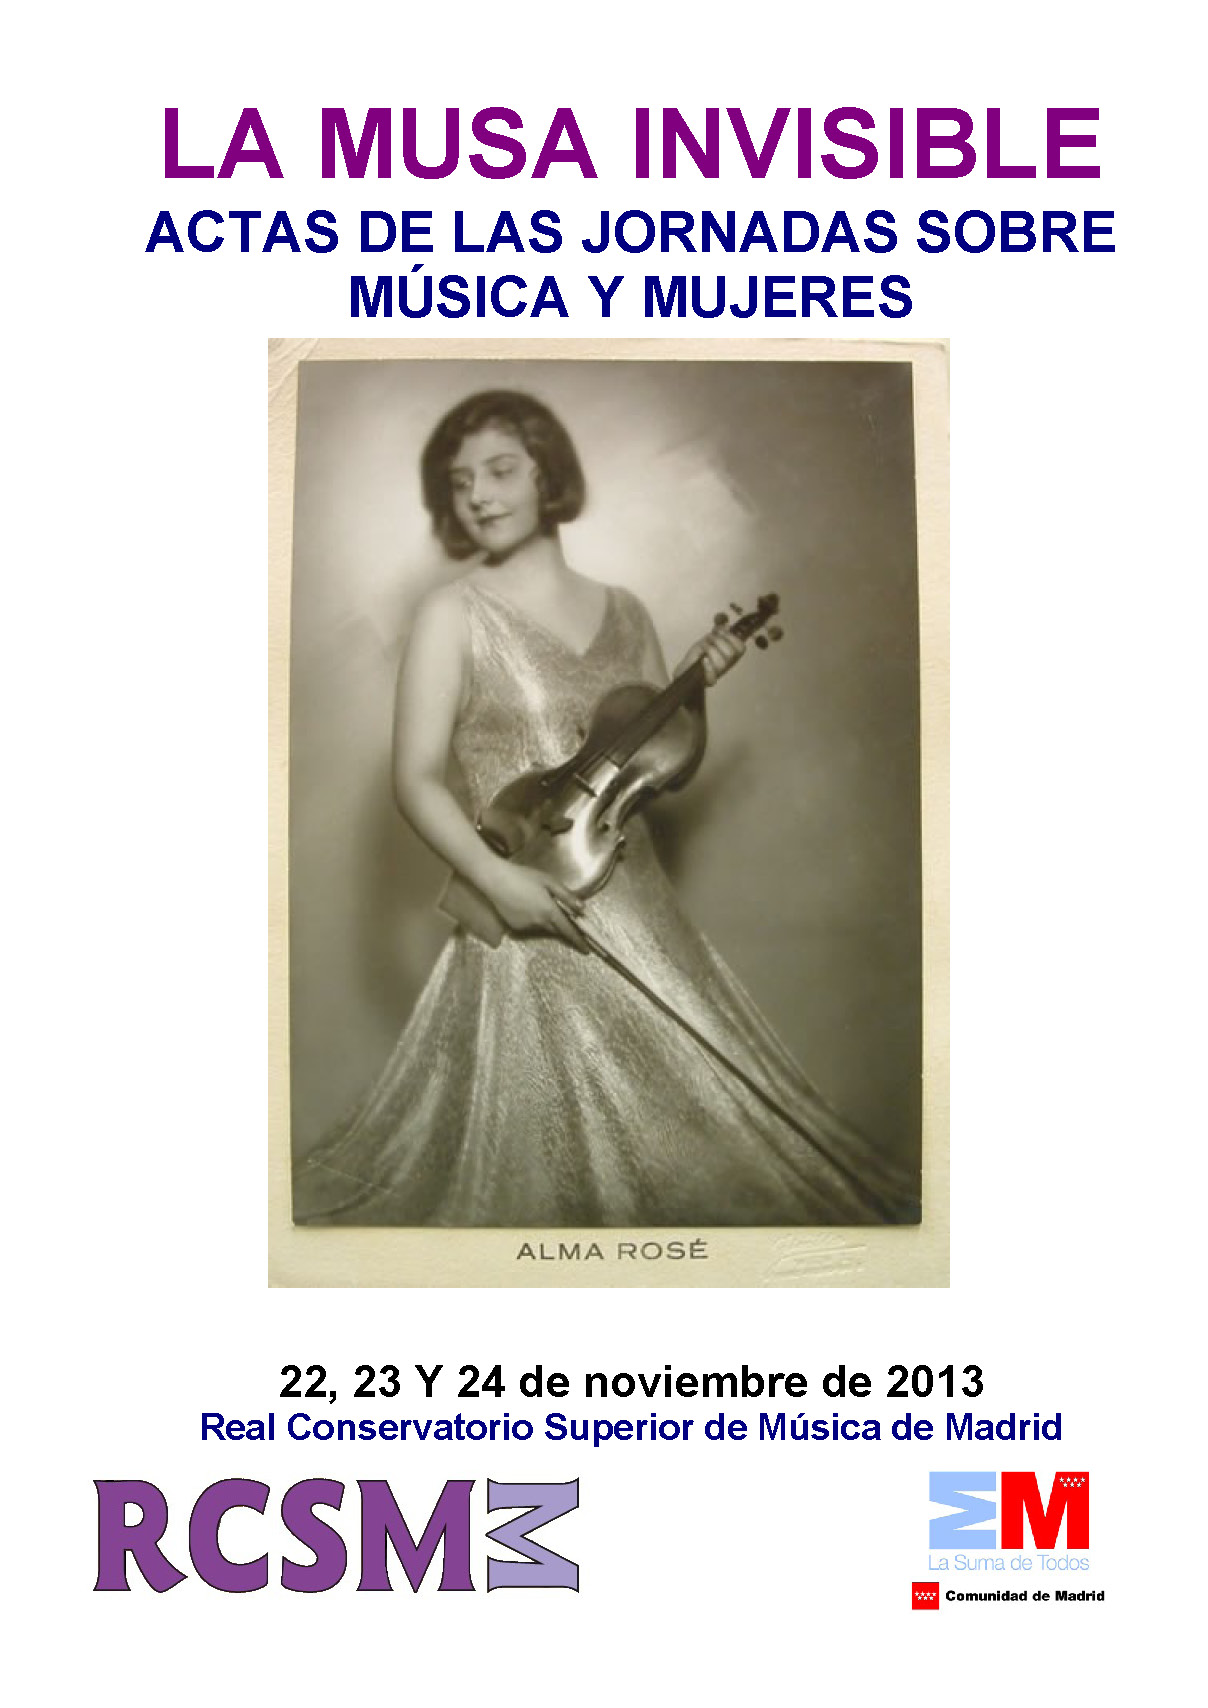 La Musa invisible: actas de las jornadas sobre música y mujeres celebradas en noviembre de 2013 (9 MB, en PDF)